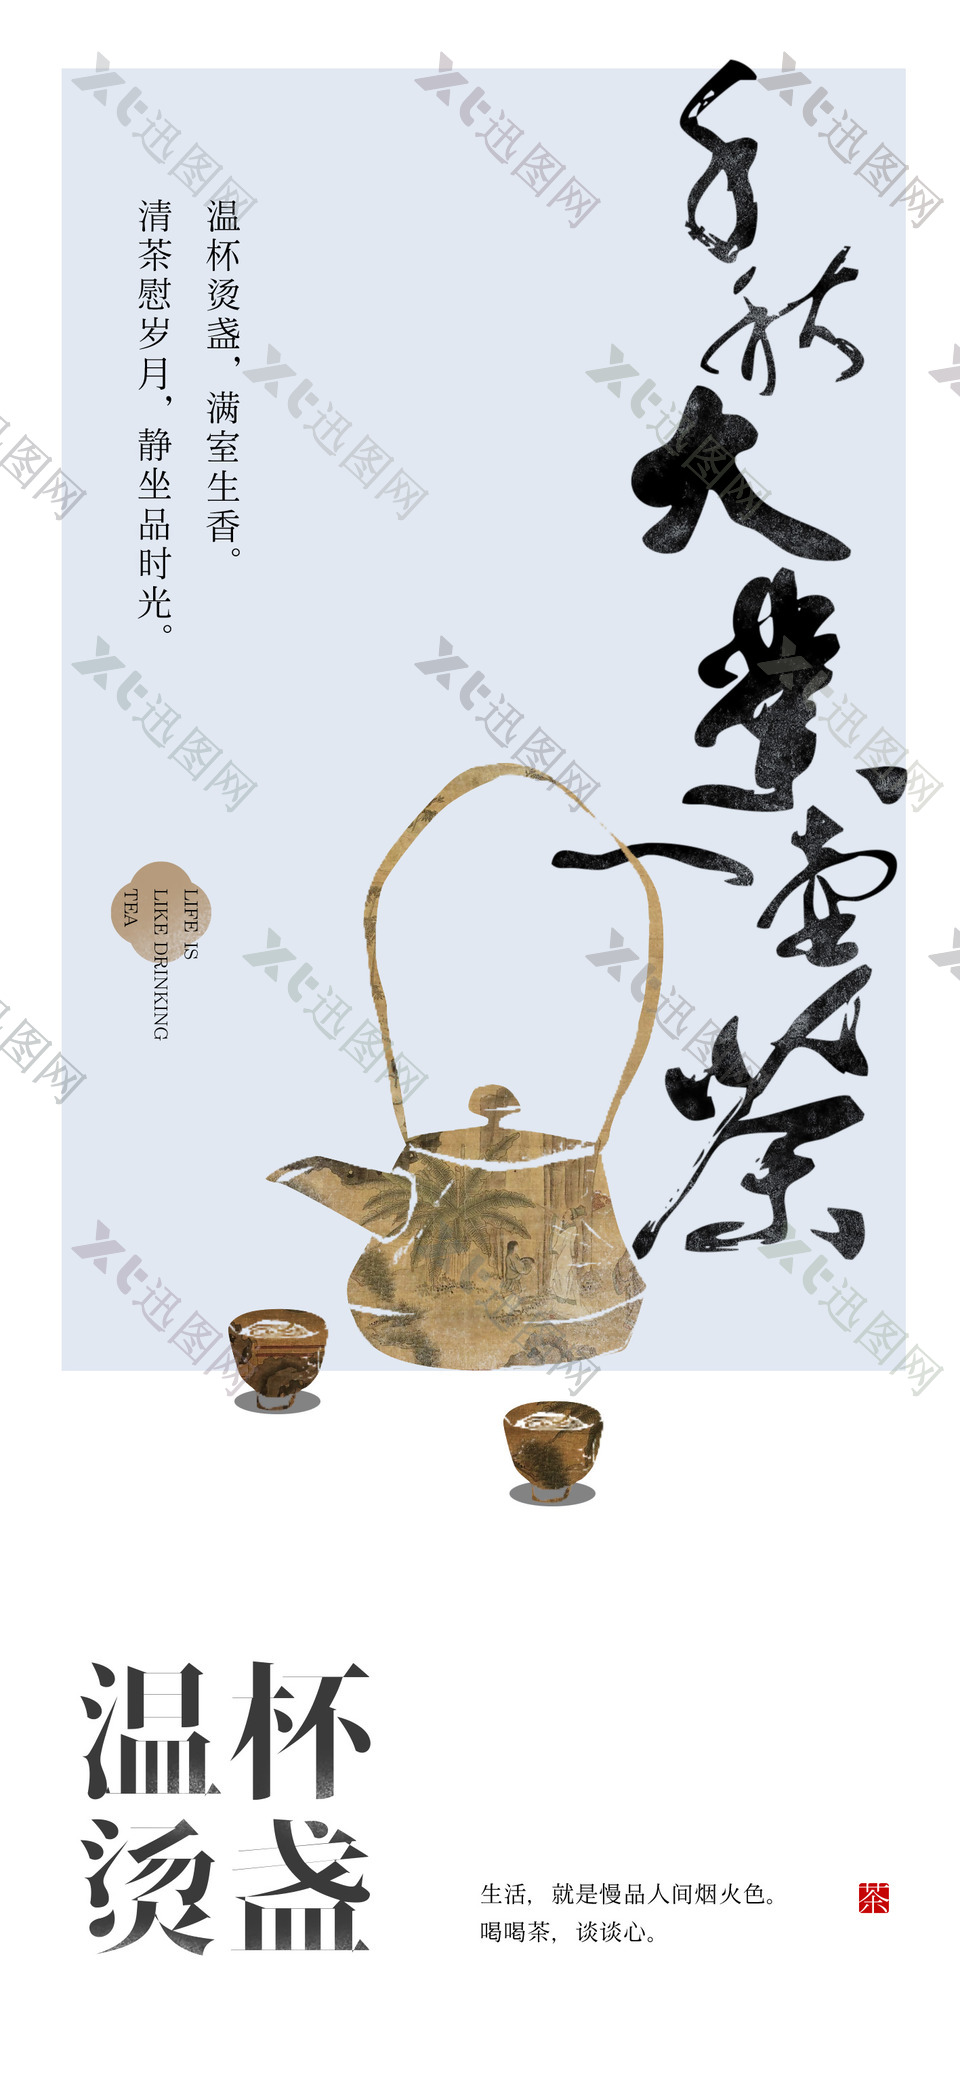 温杯烫盏清茶慰岁月主题品茶海报